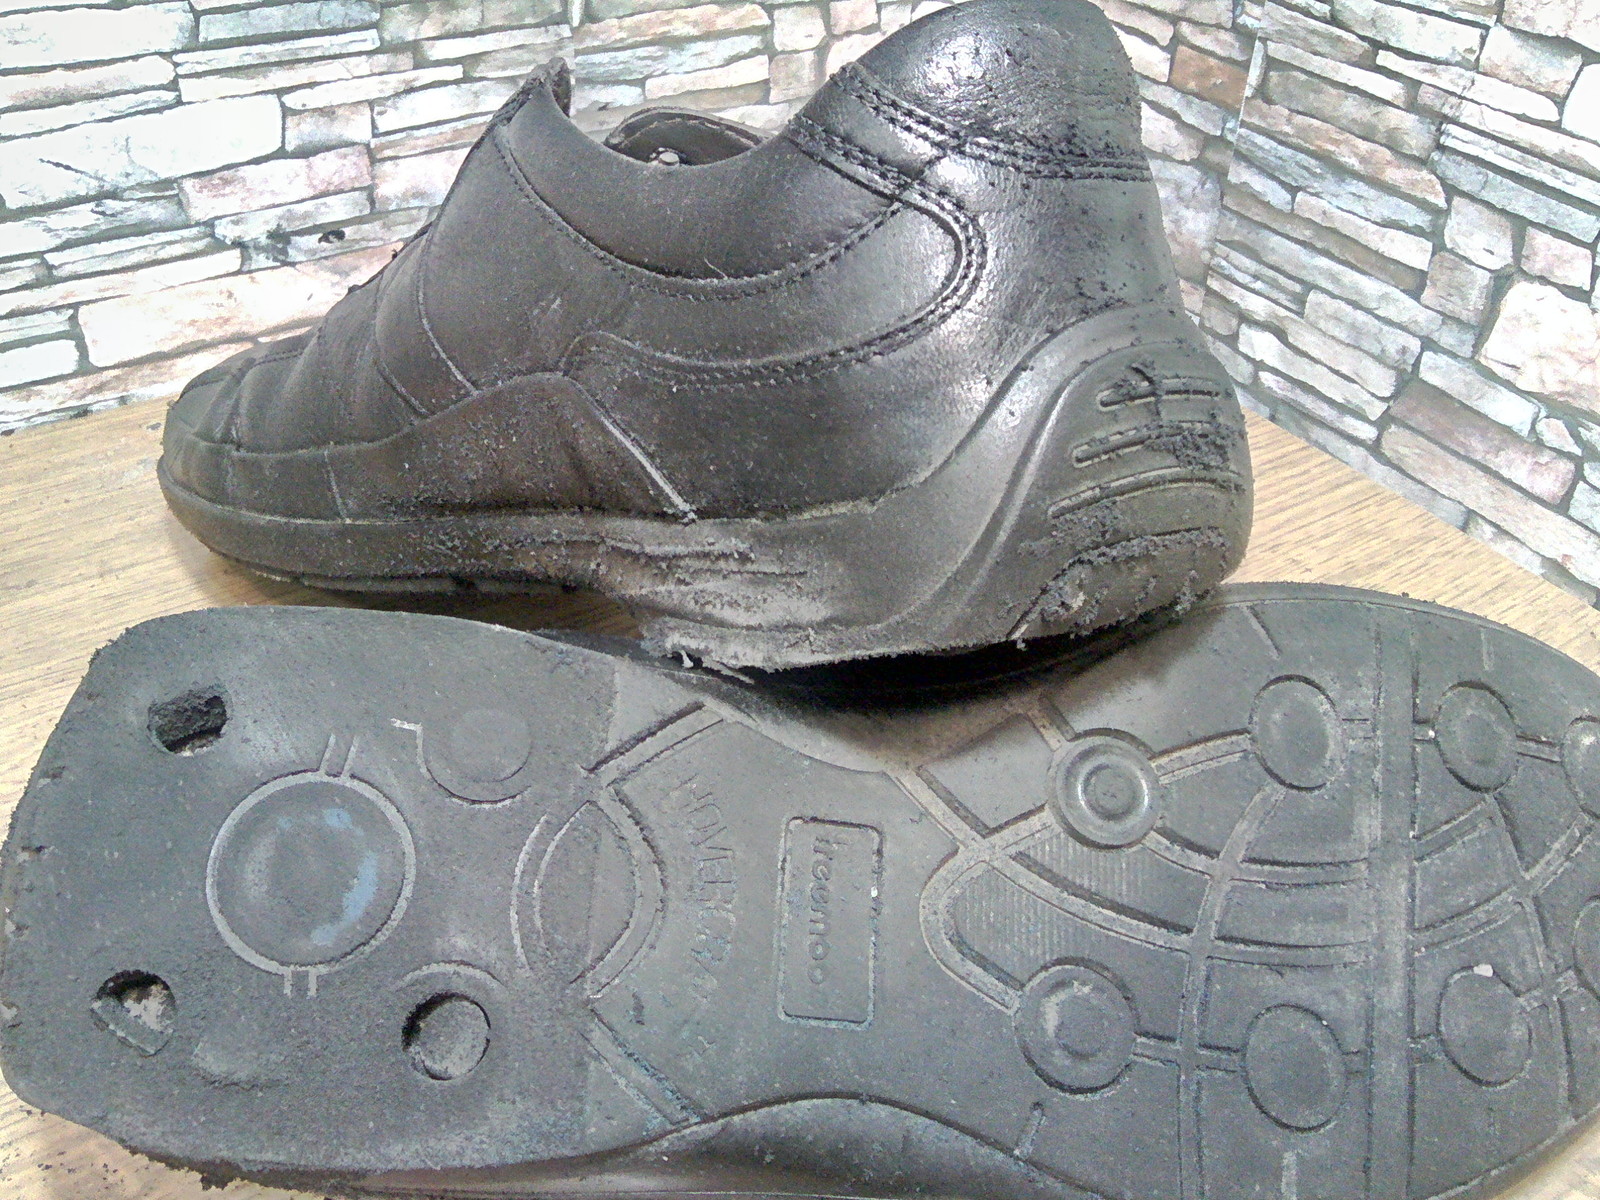 Heels on a flat sole. - My, Shoe repair, Heels, Work, Longpost